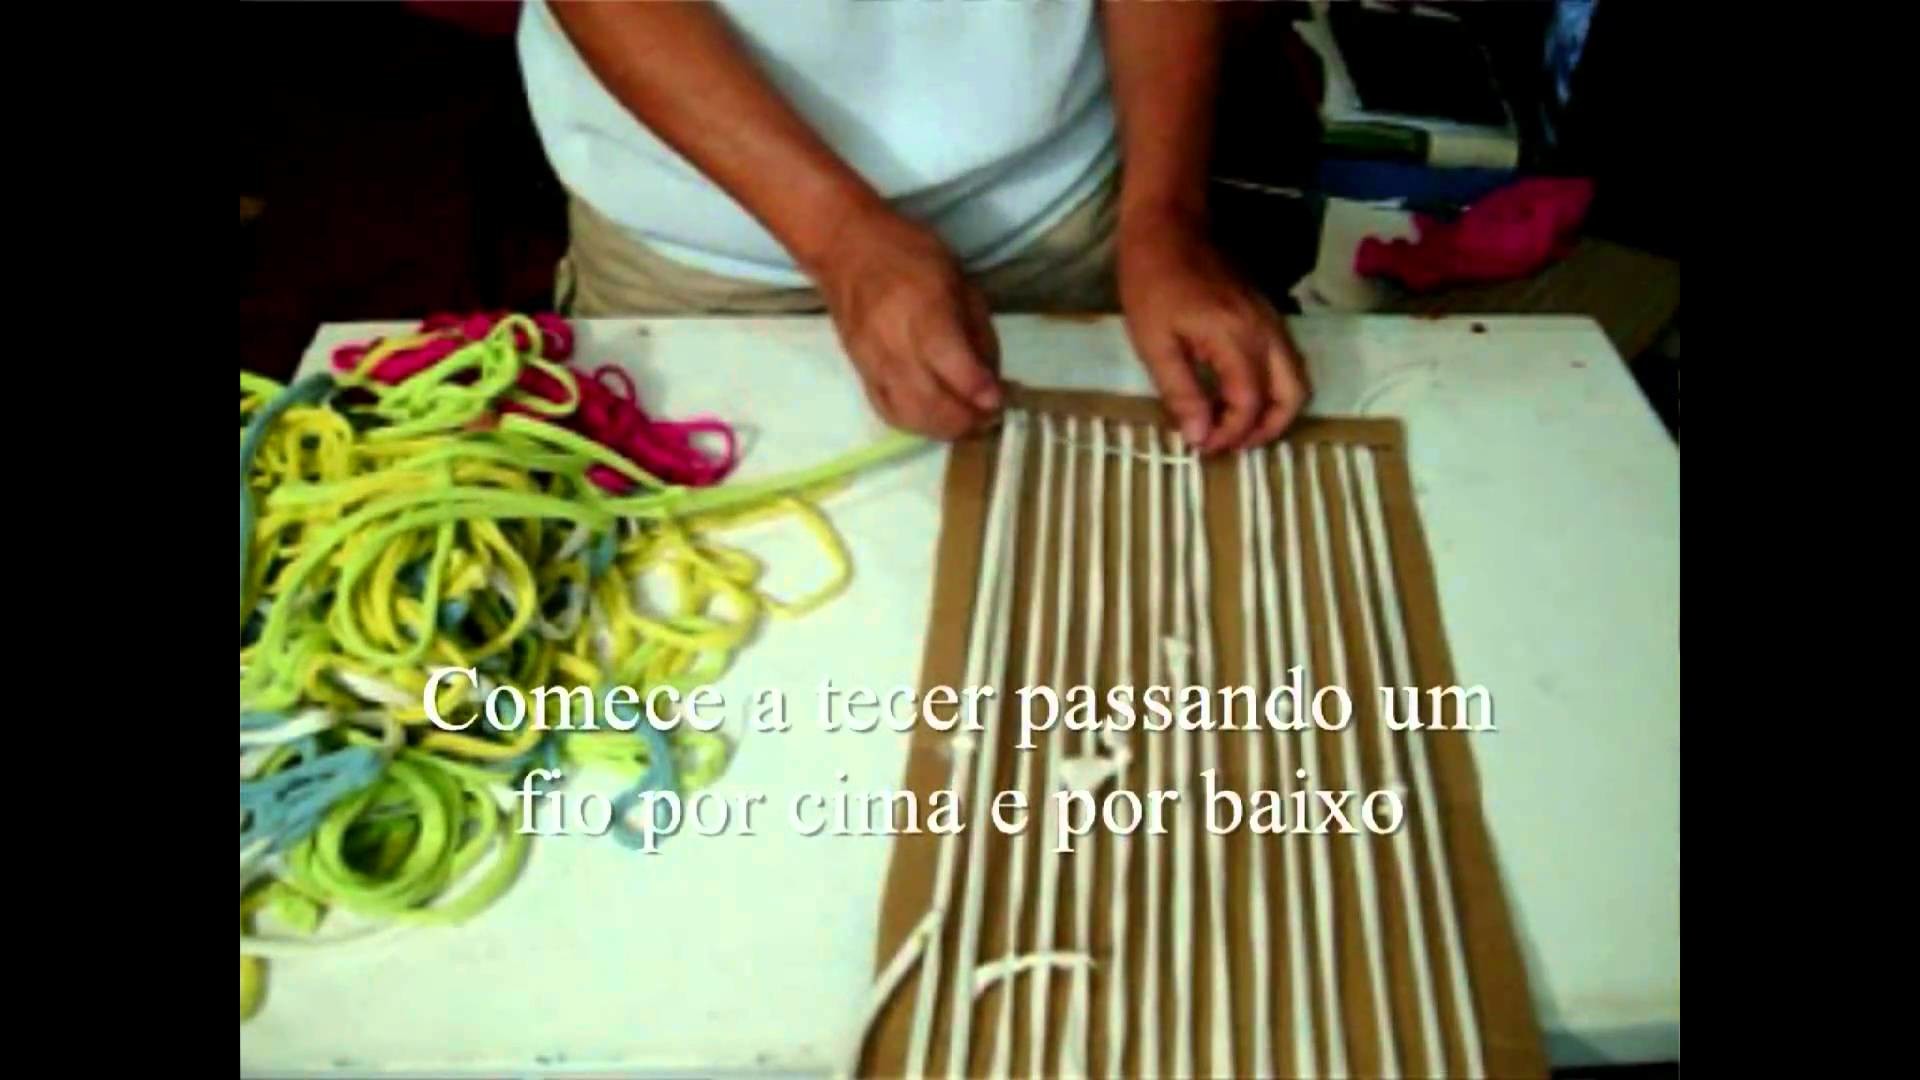 Artesanato : Tear de papelão - Craft: Loom cardboard - Artesanía: cartón Loom